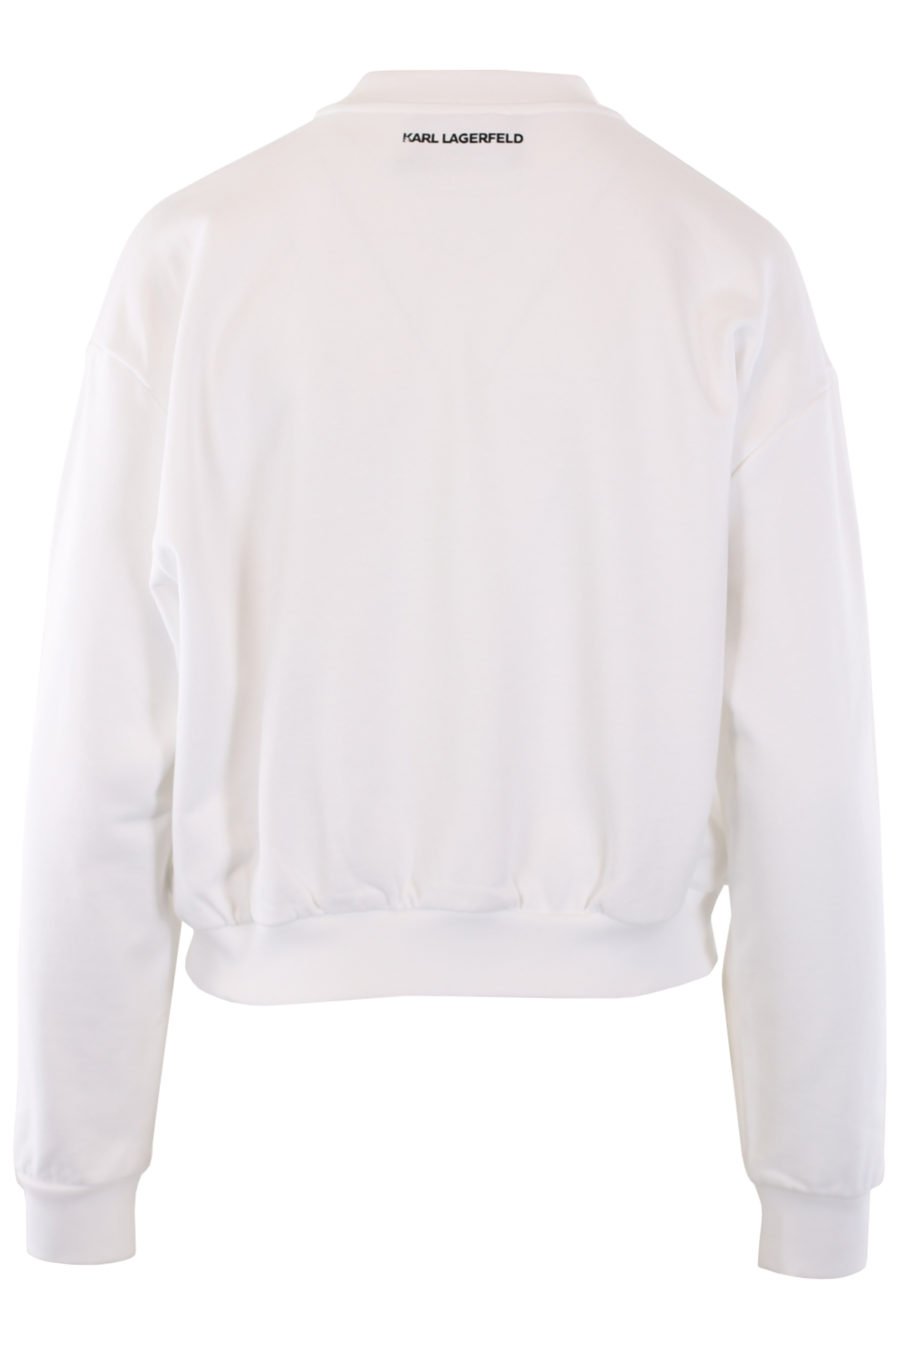 Weißes Sweatshirt mit gesticktem blauem Logo - IMG 0834